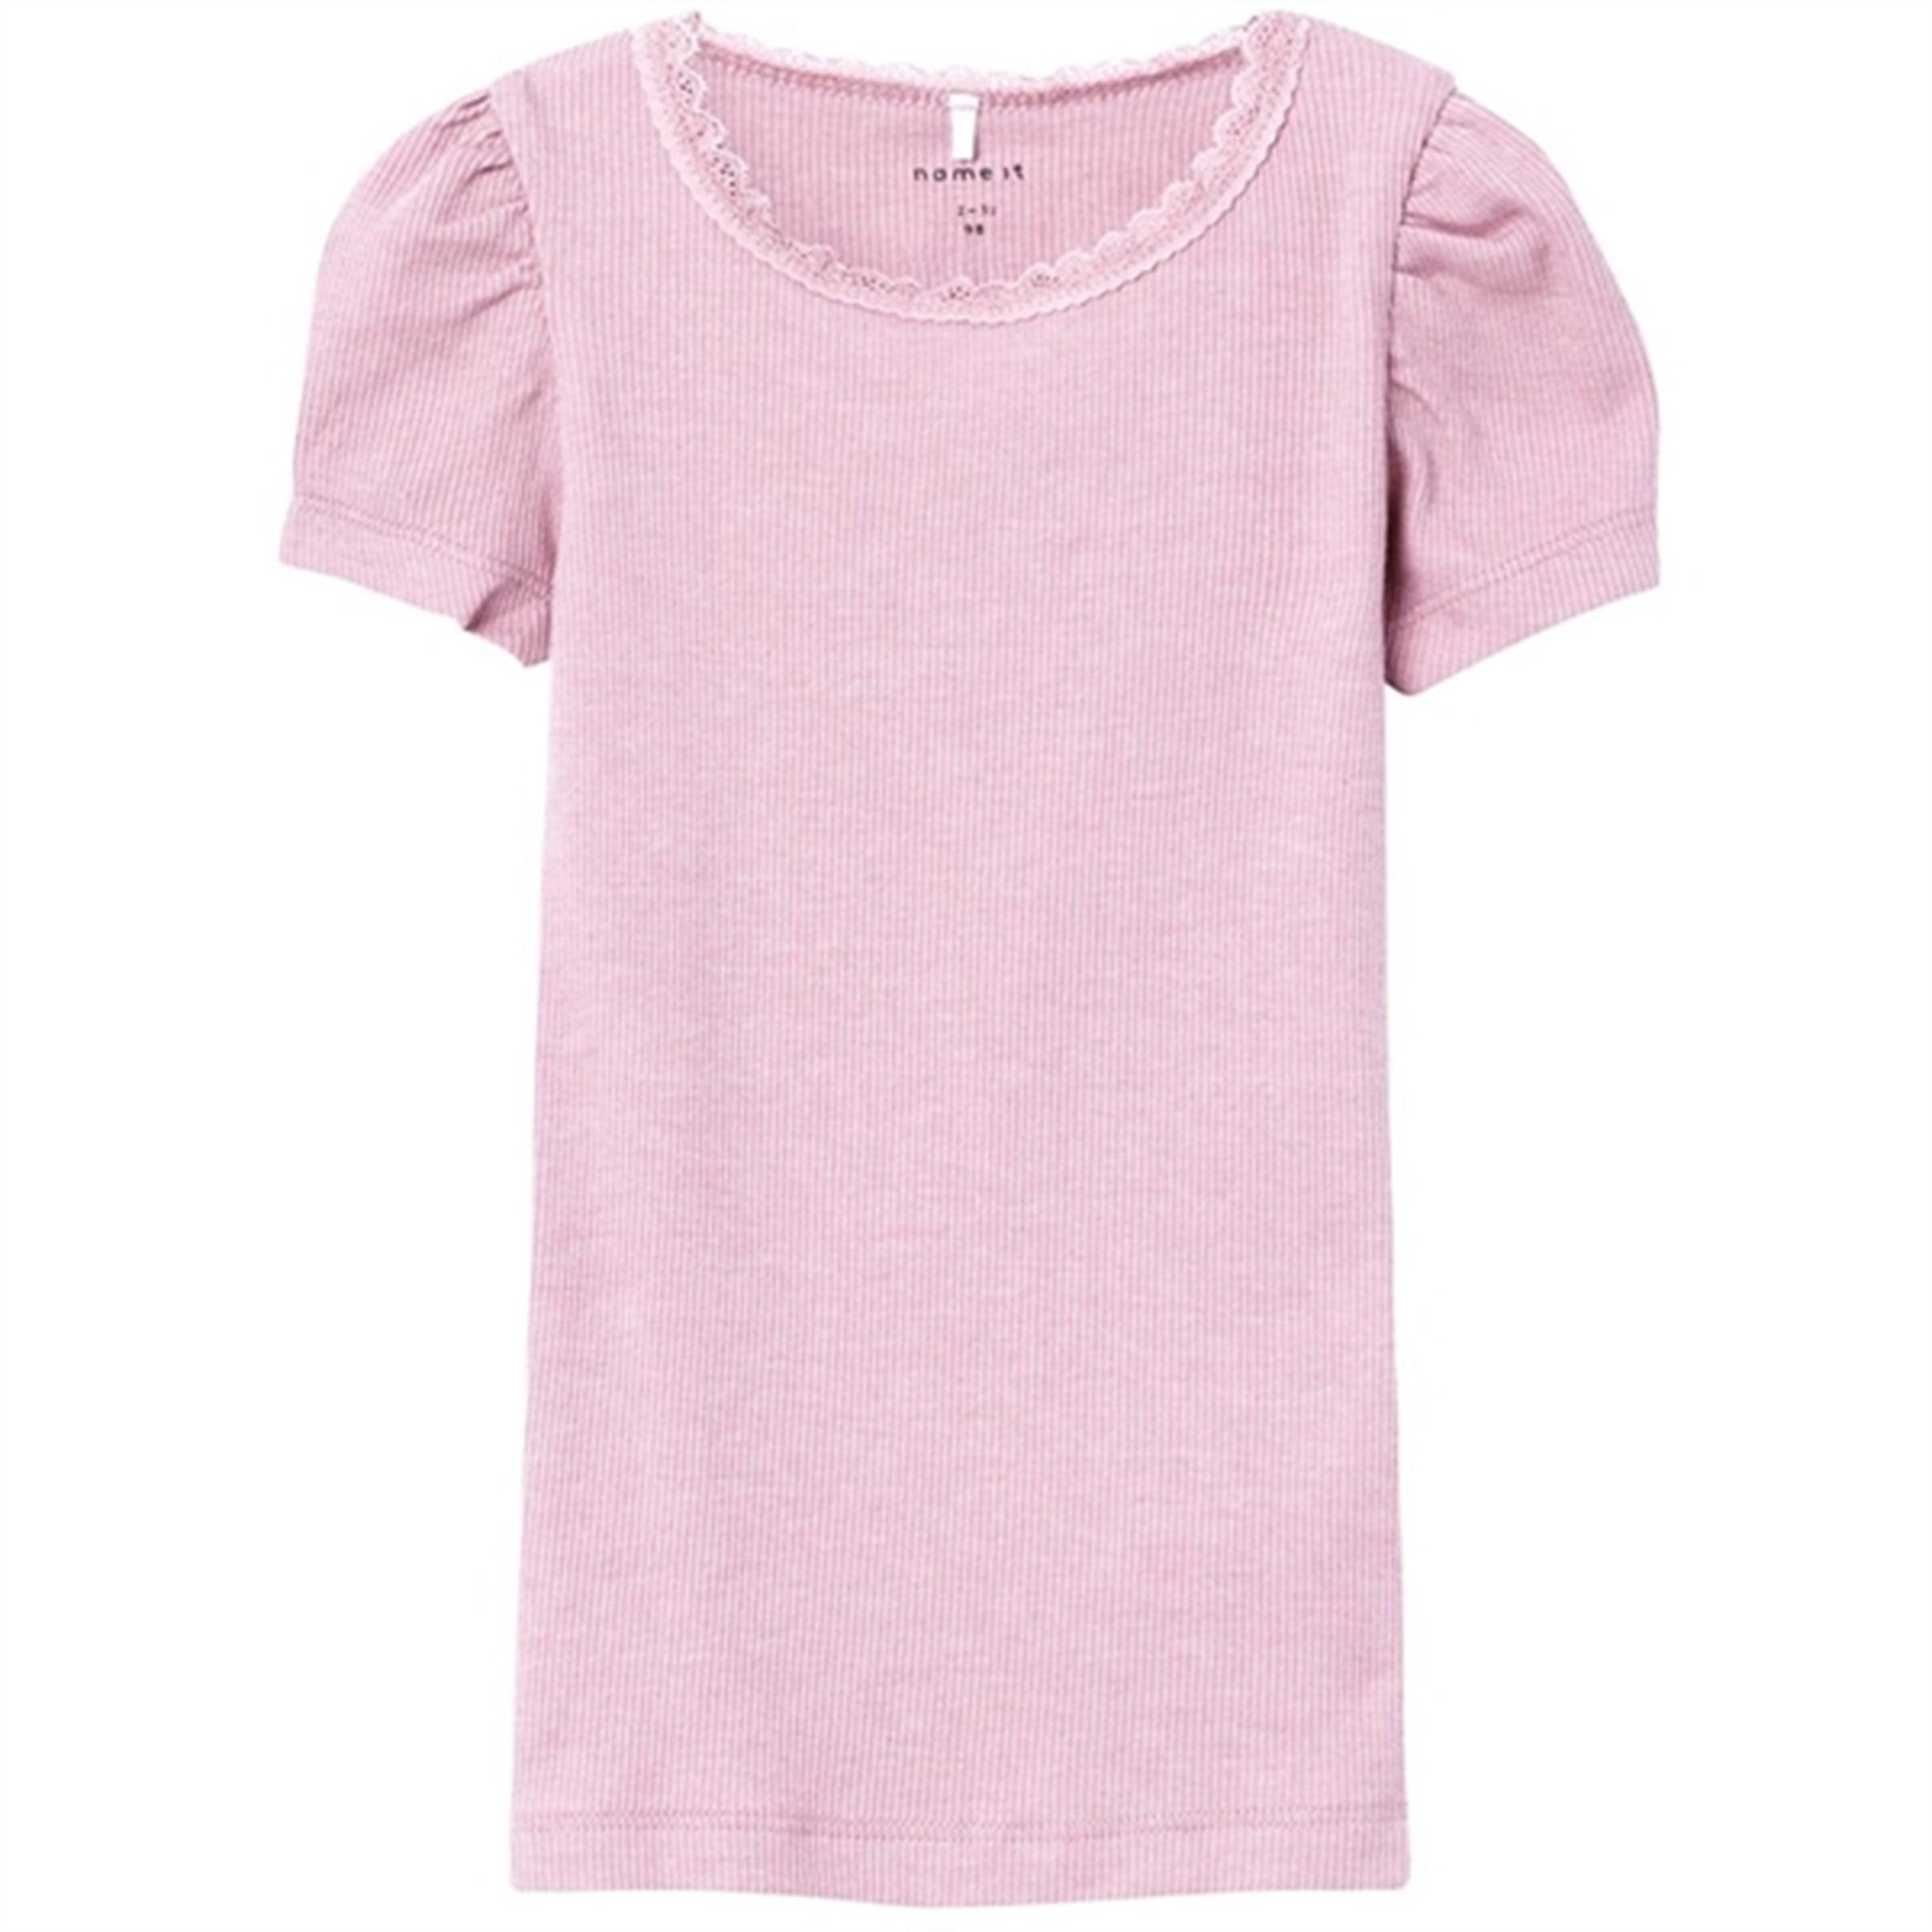 Name it Parfait Pink Kab T-Shirt Noos